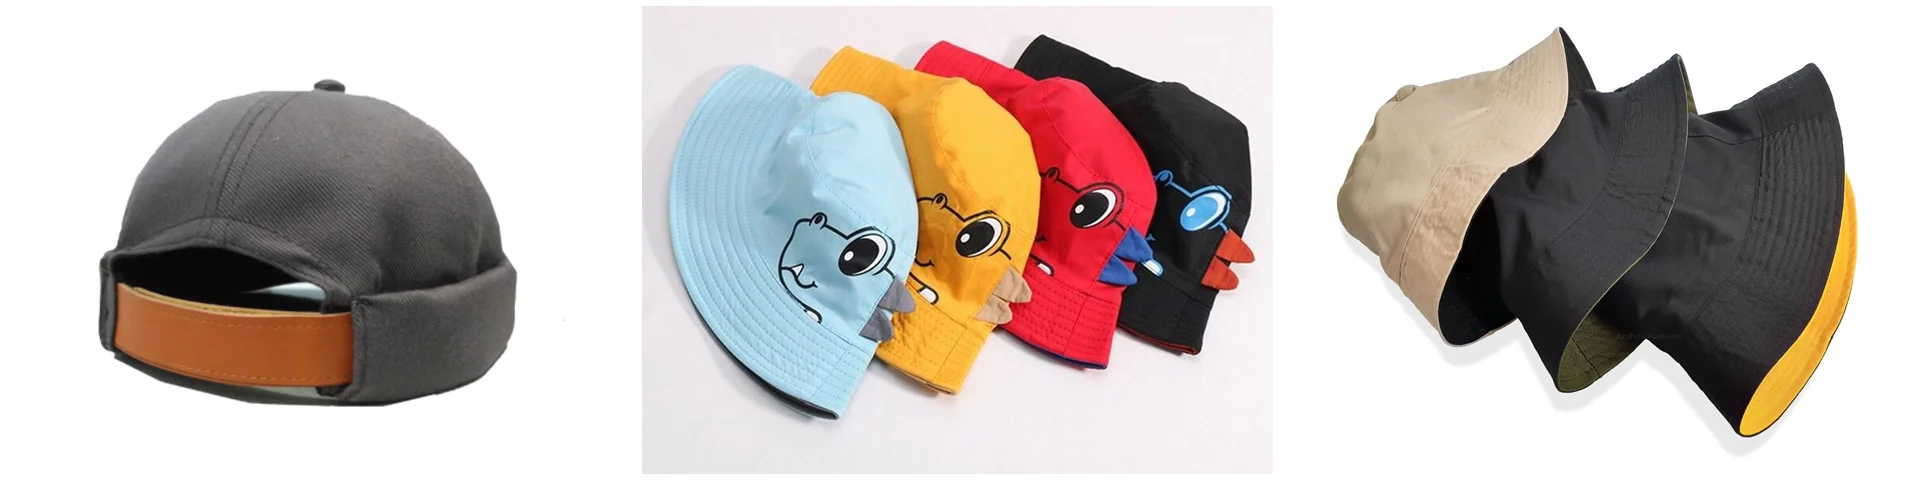 Produk populer di Arshila Fashion, Miki Hat dan Bucket Hat untuk anak & dewasa.